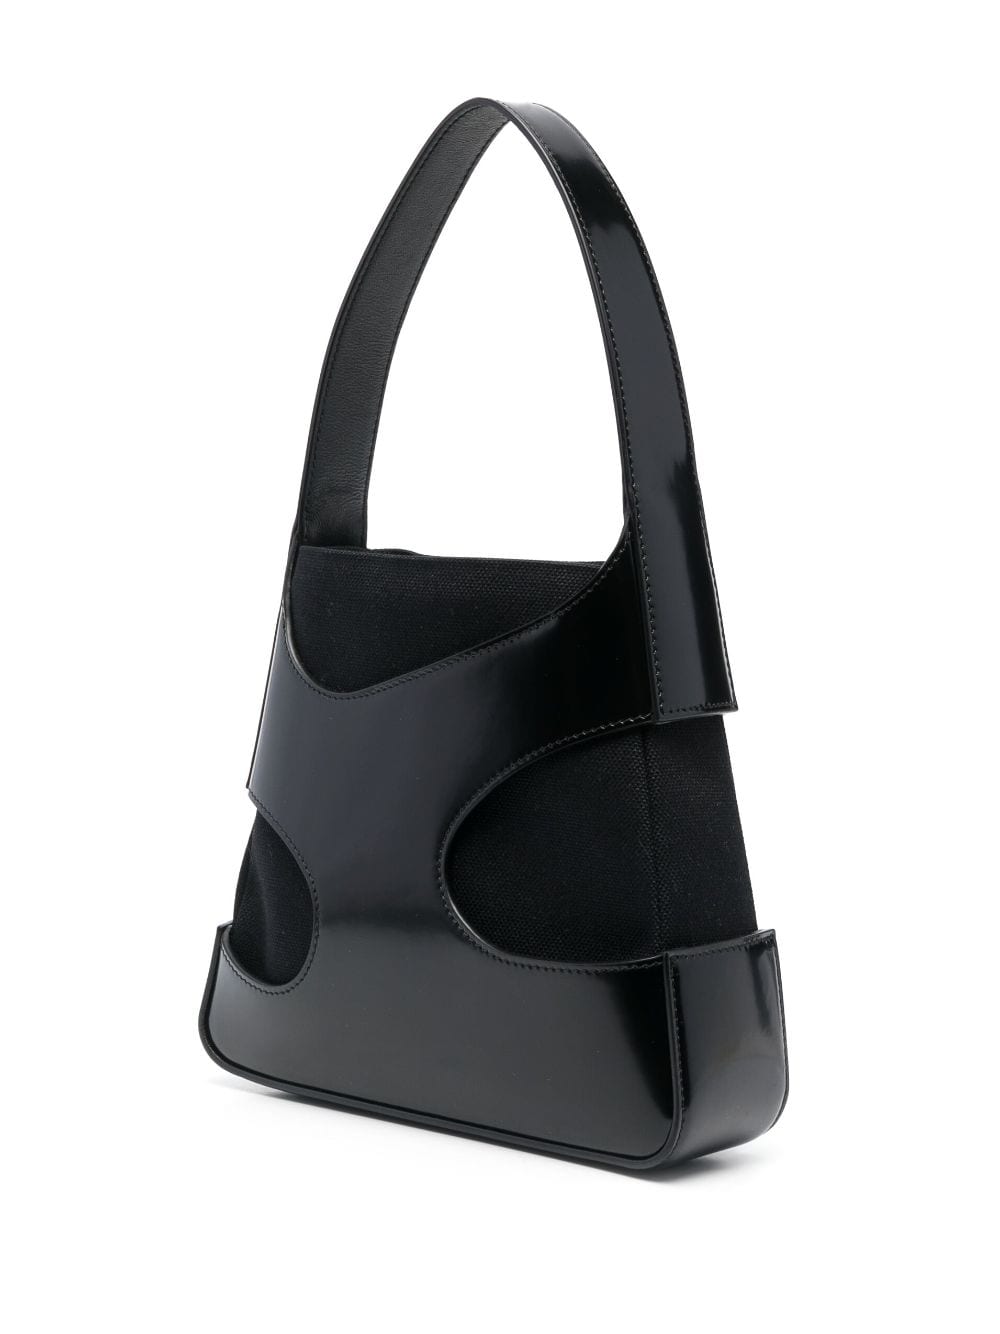 Ferragamo cut-out Leather Shoulder Bag - Farfetch